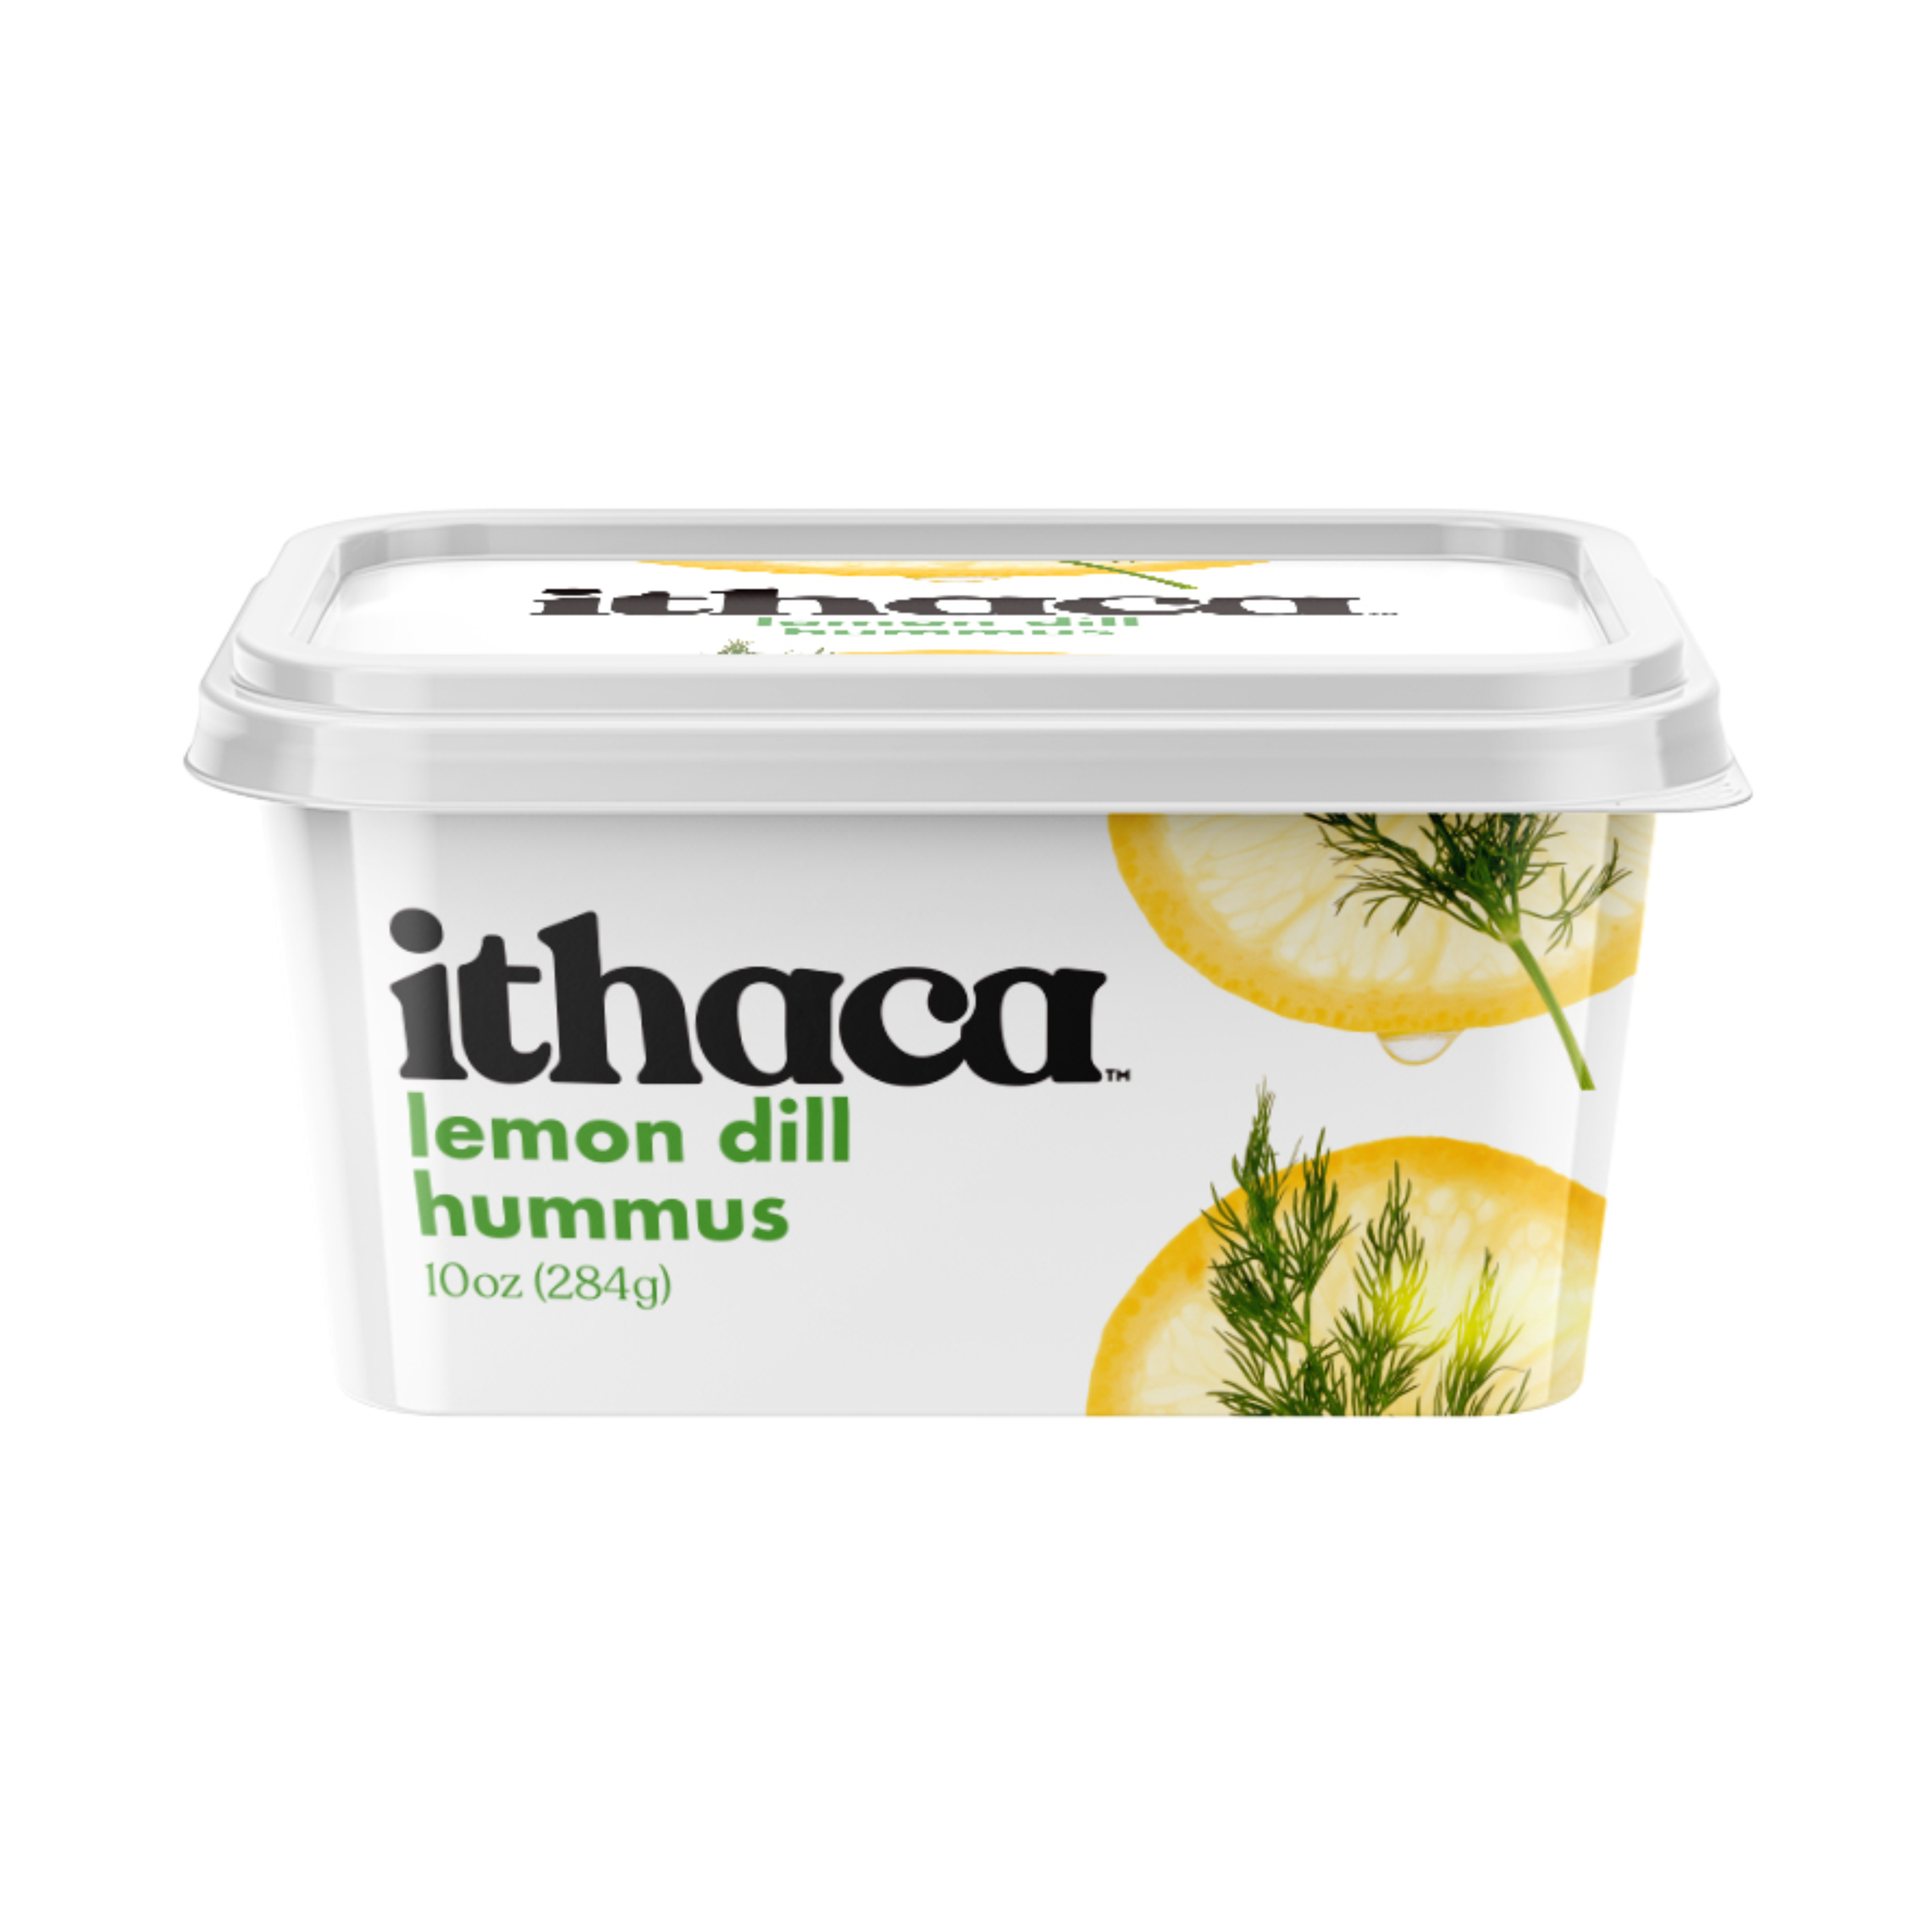 Free Tub of Ithaca Hummus